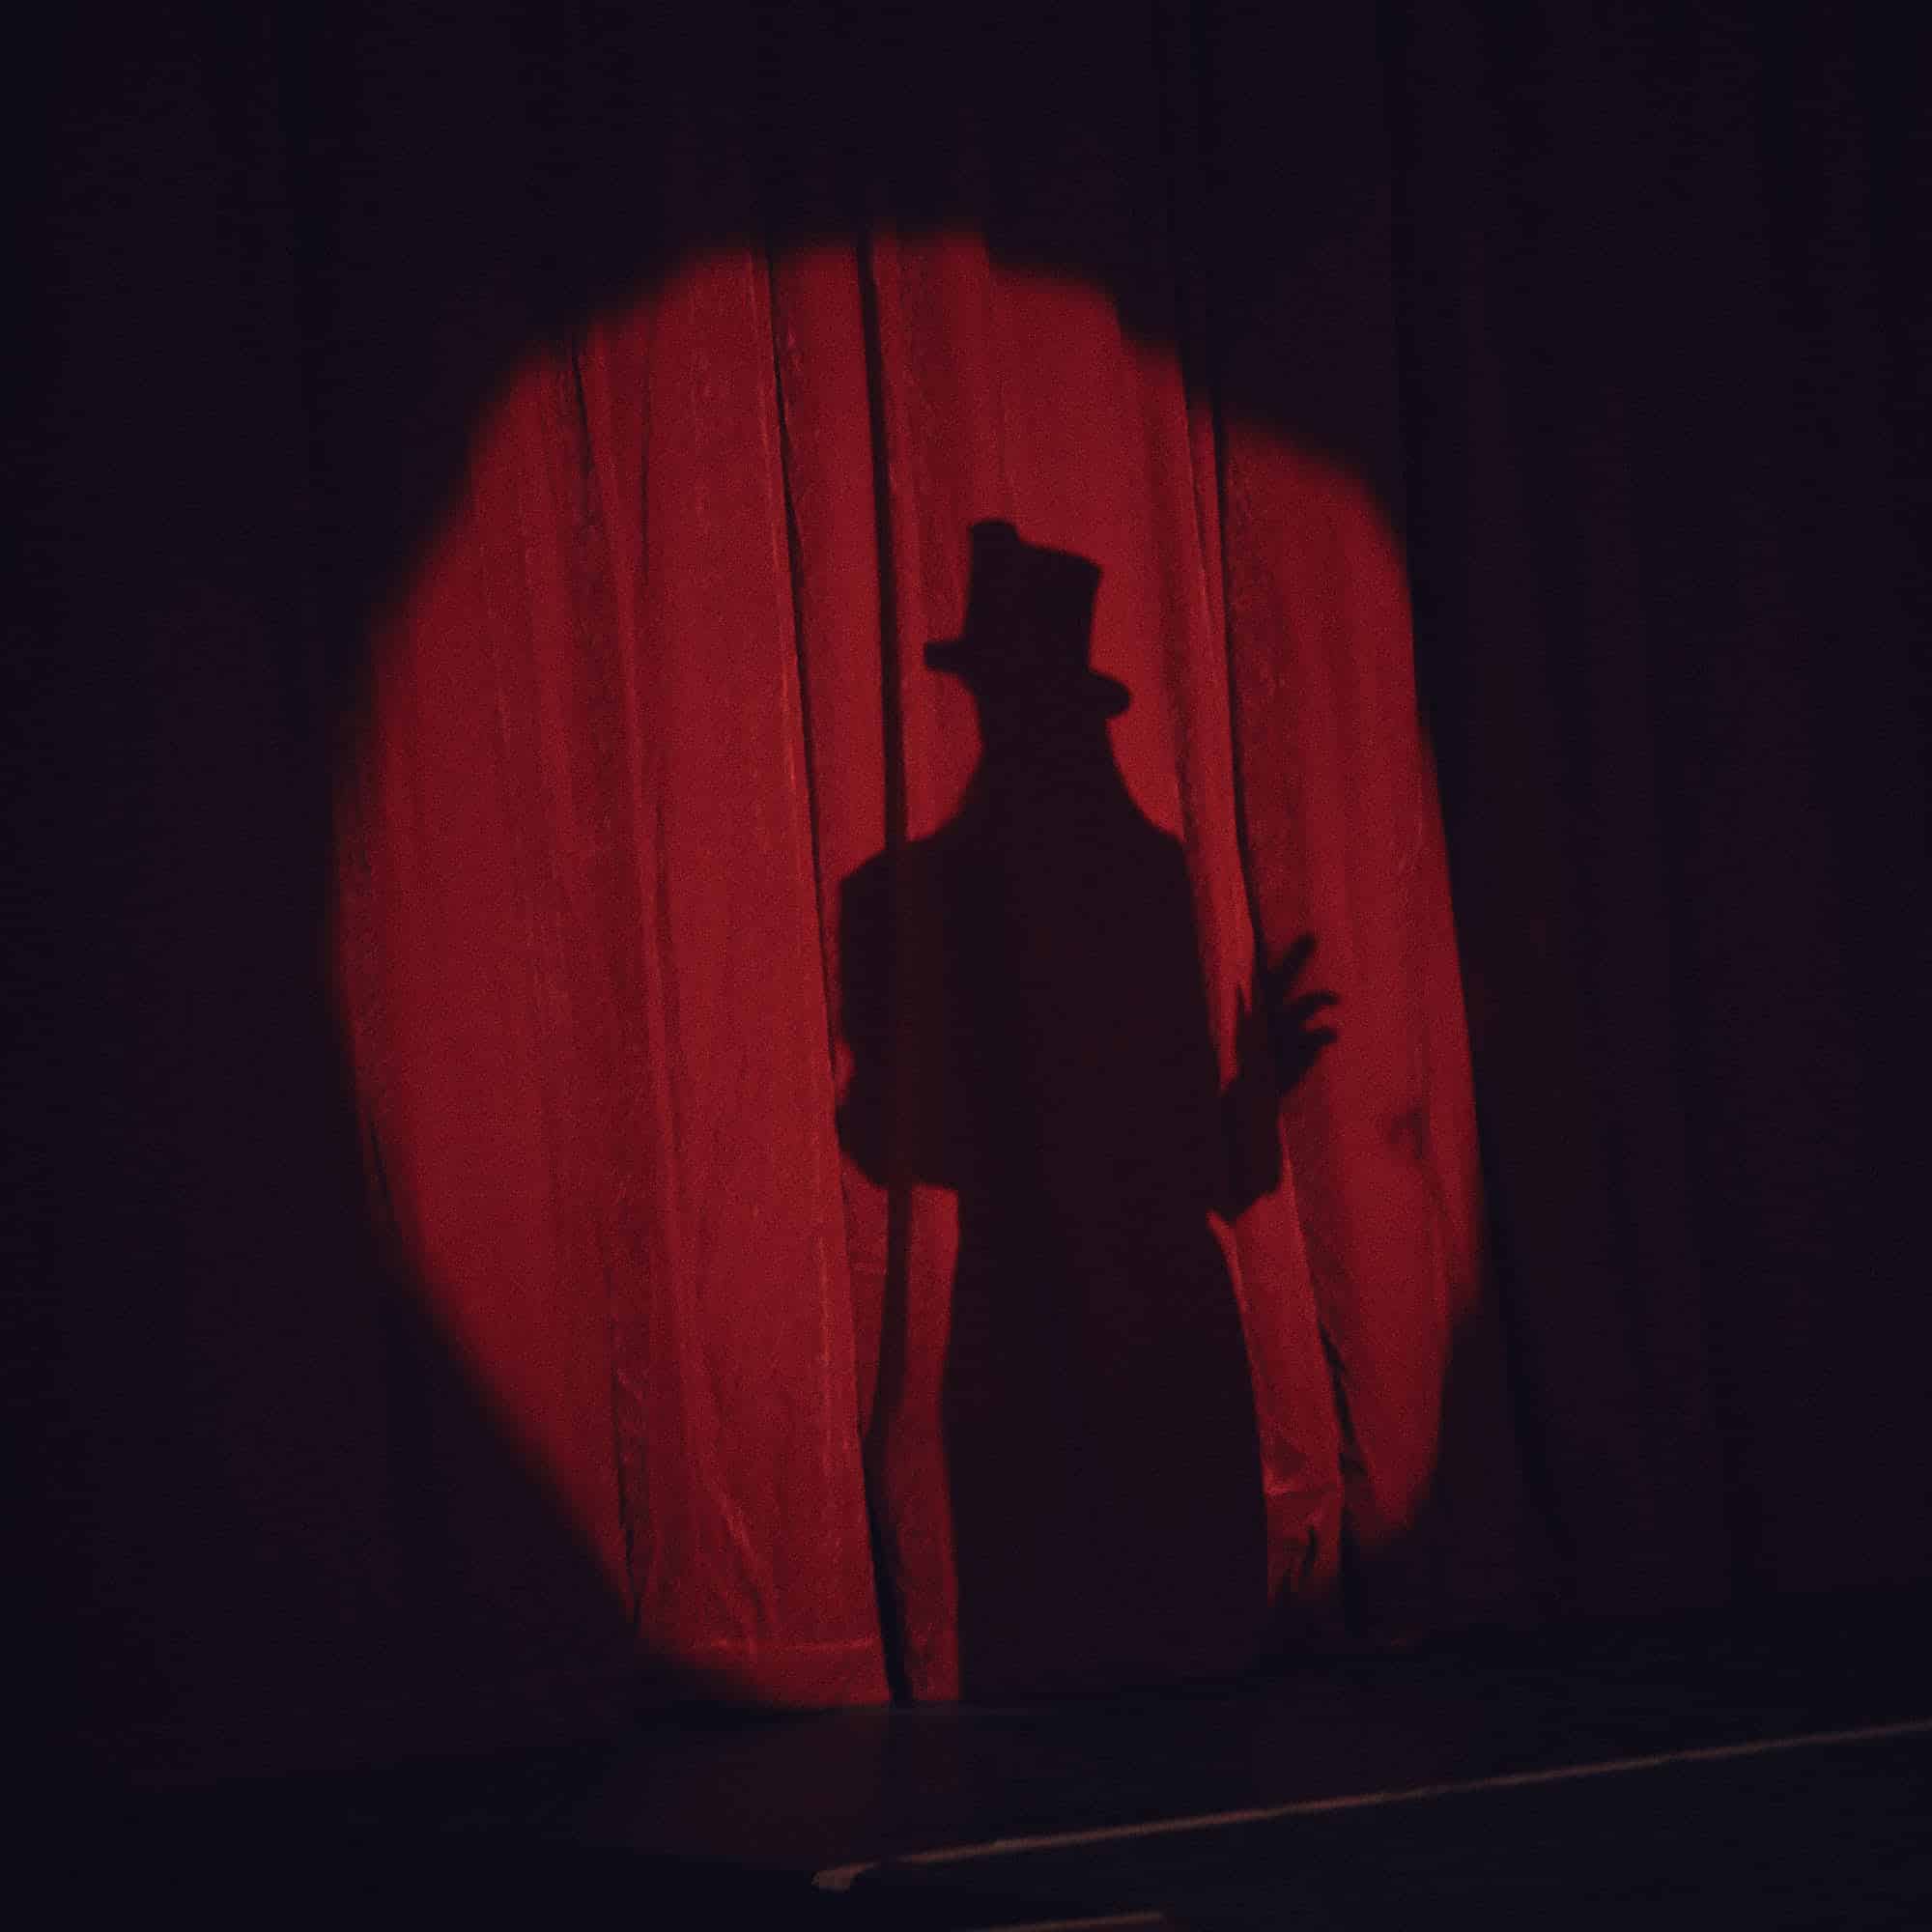 Kreisrunder Lichtspot auf dem roten Vorhang im Zirkus mit der silhouette von Julica.